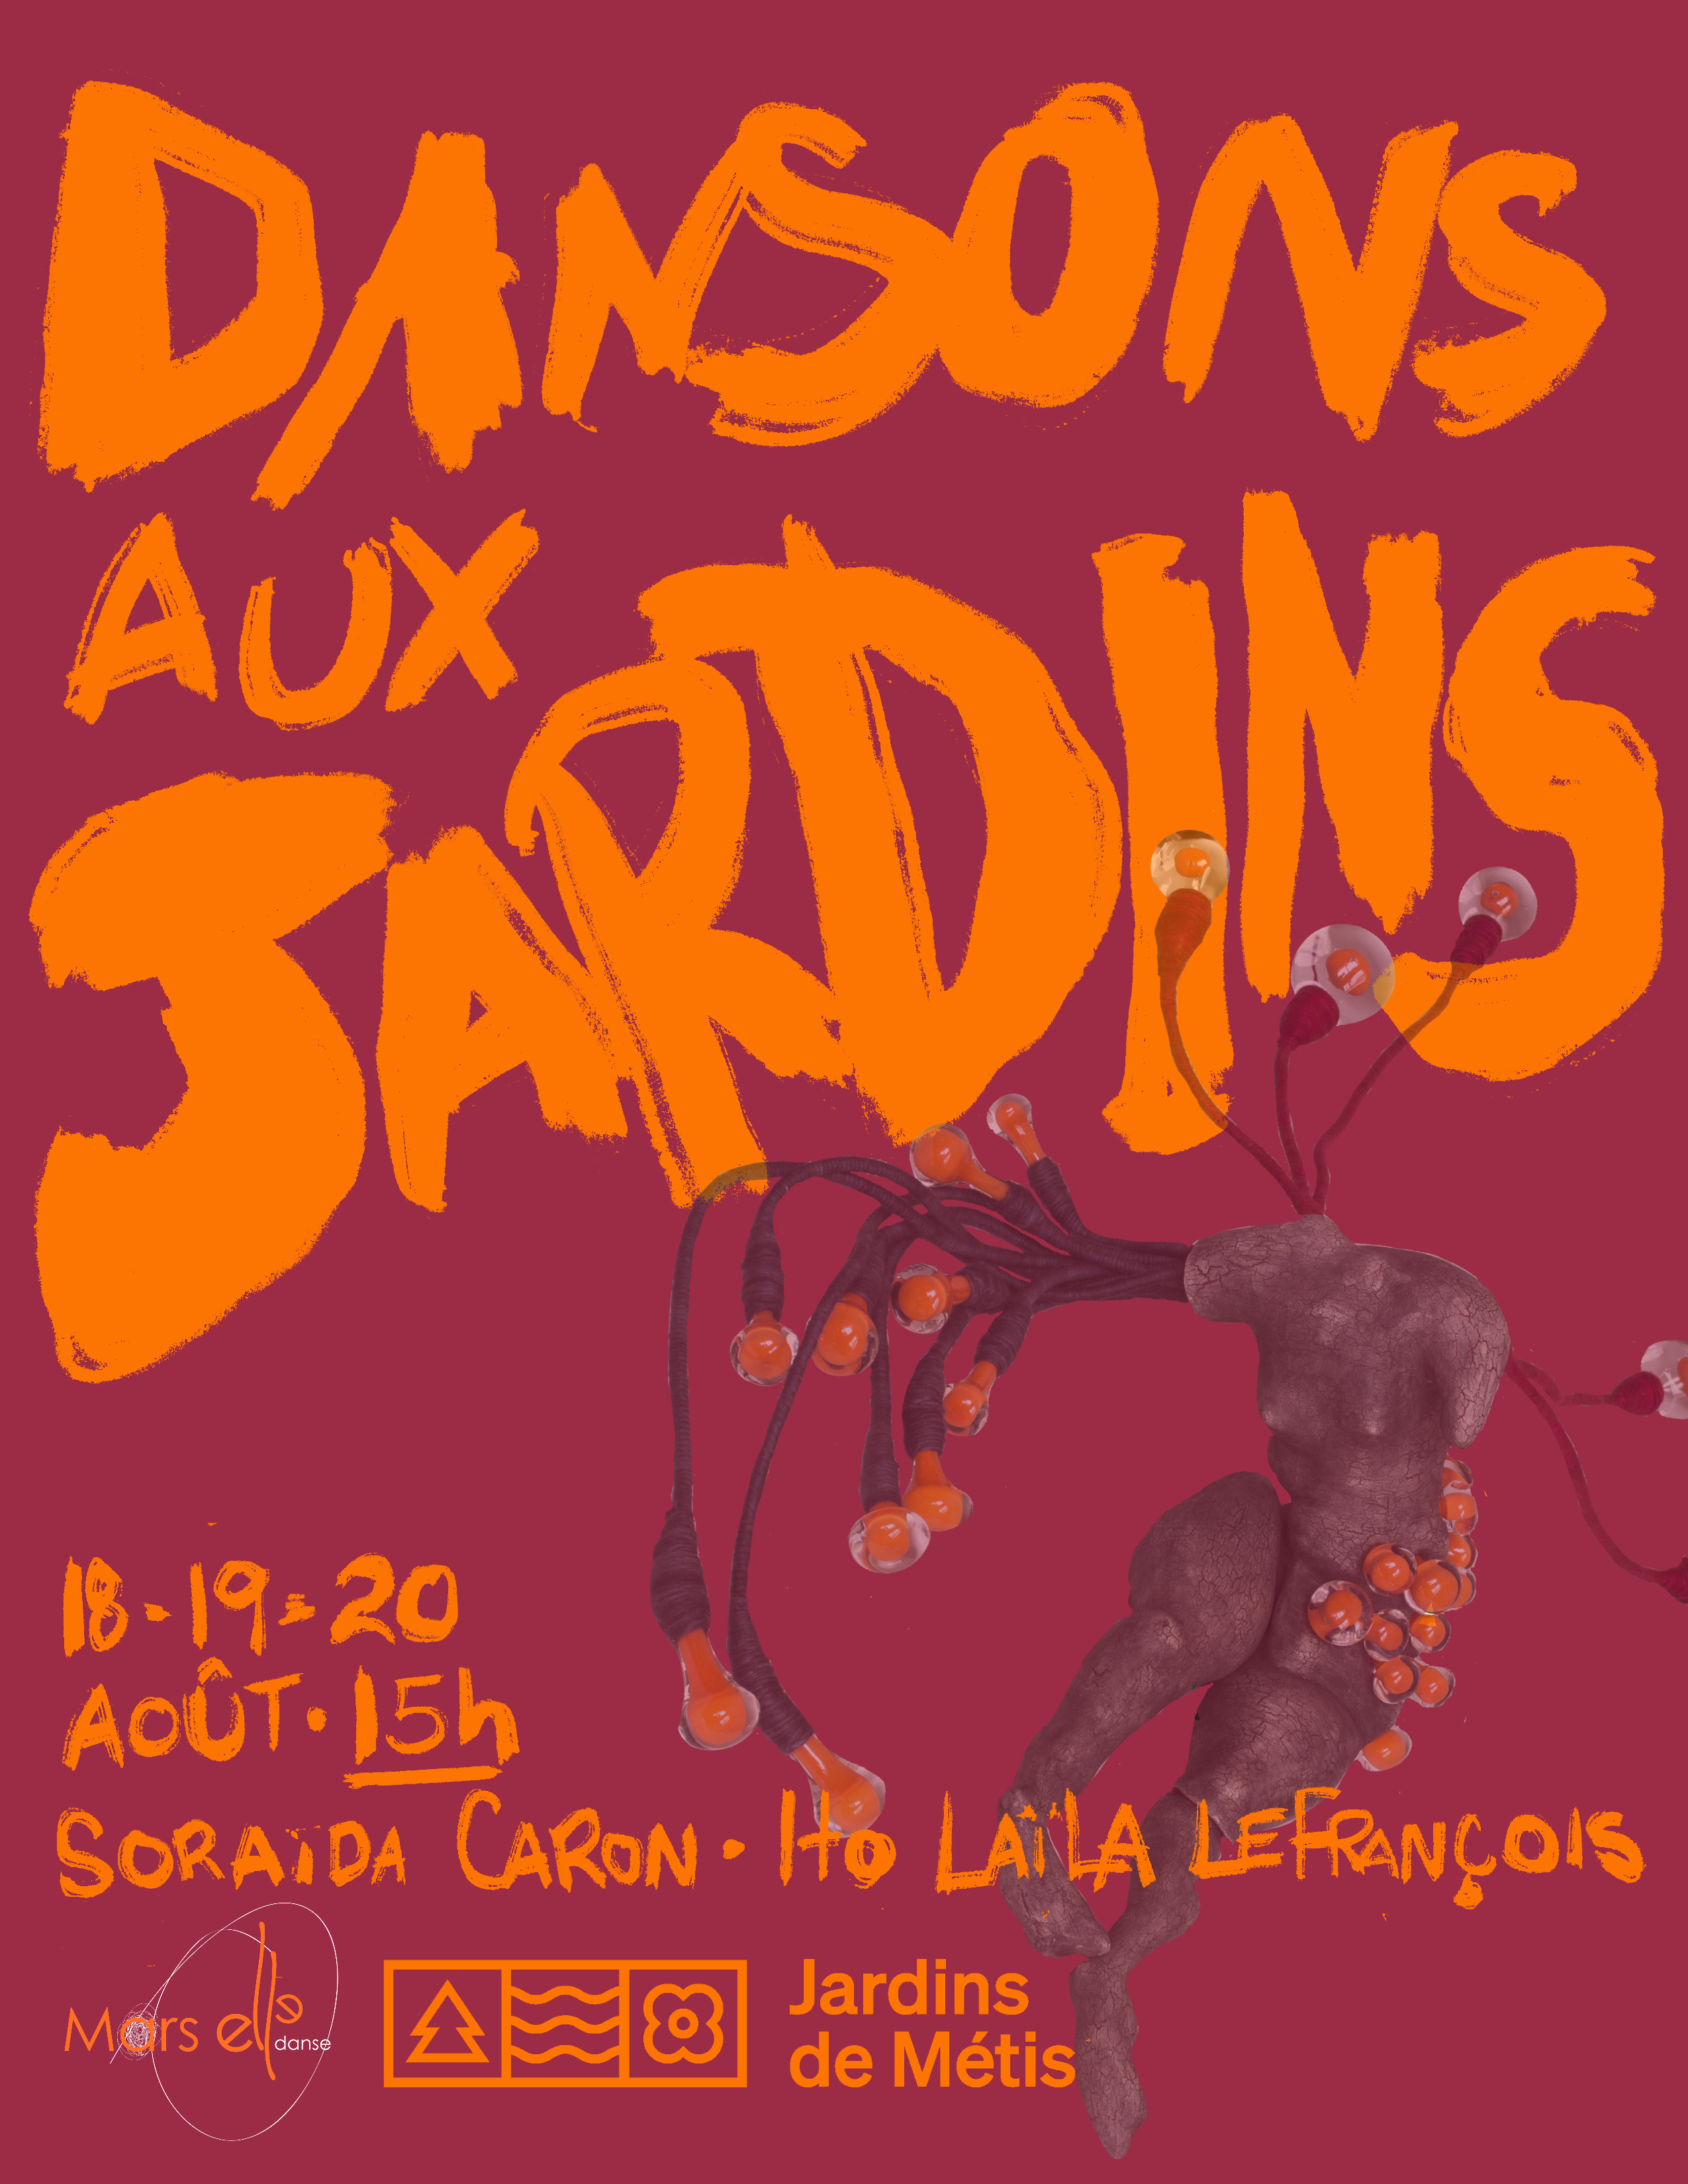 Dansons aux Jardins! (Let's Dance at the Gardens)